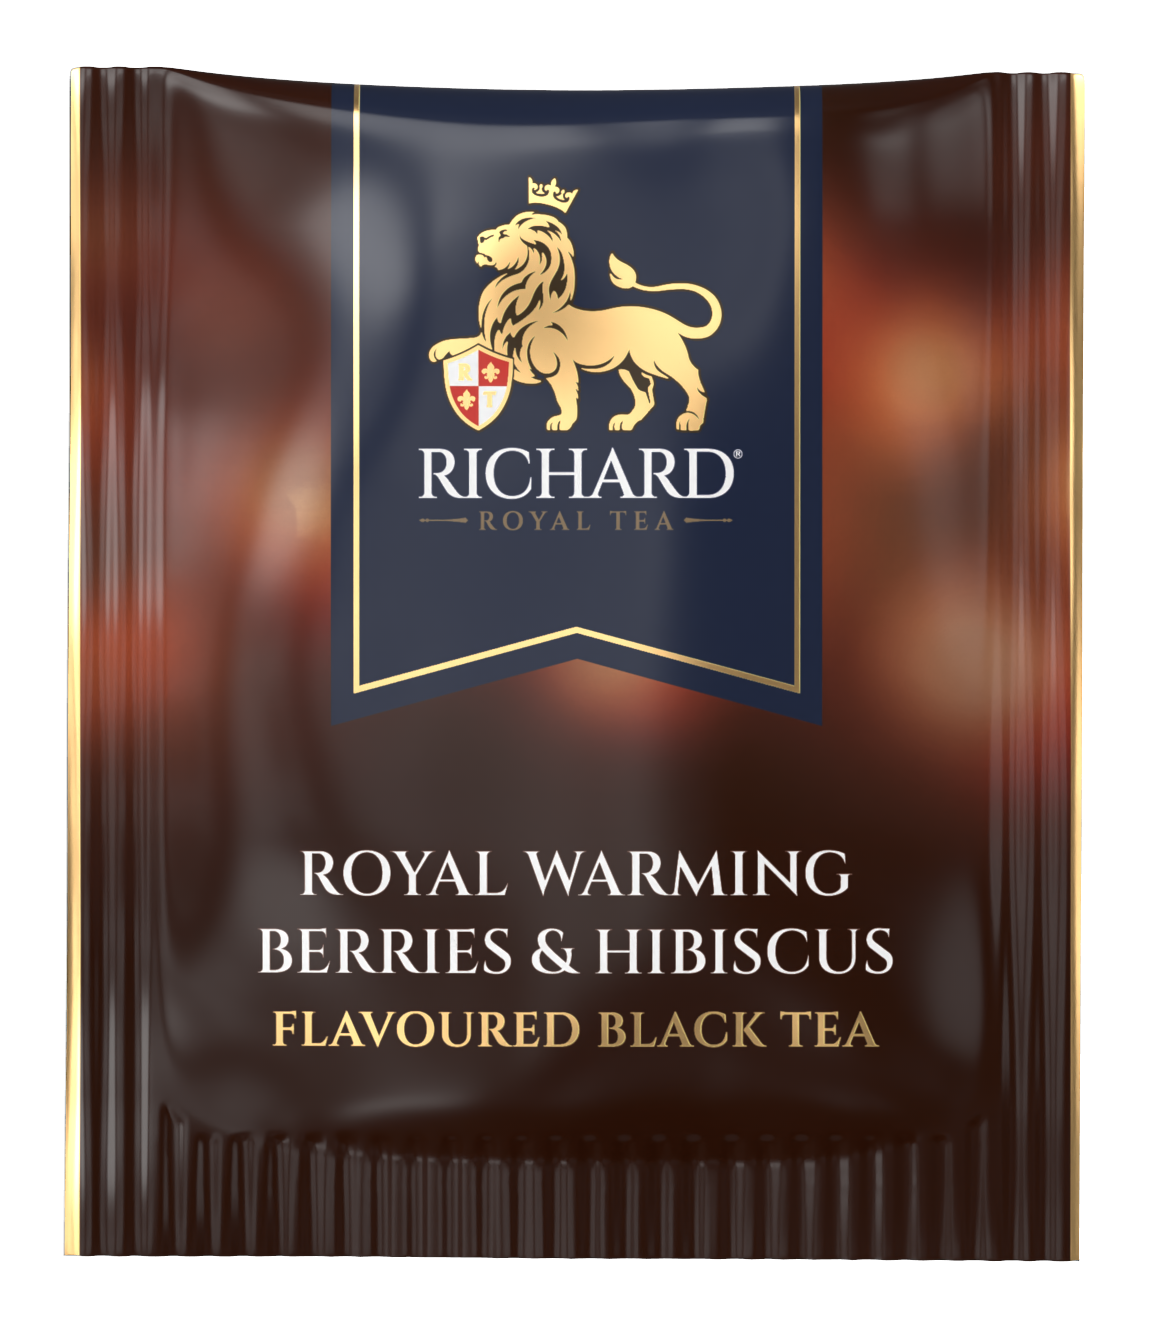 Richard Royal Melengető Bogyók & Hibiszkusz ízesített fekete tea, 25 filter Richard Royal Tea